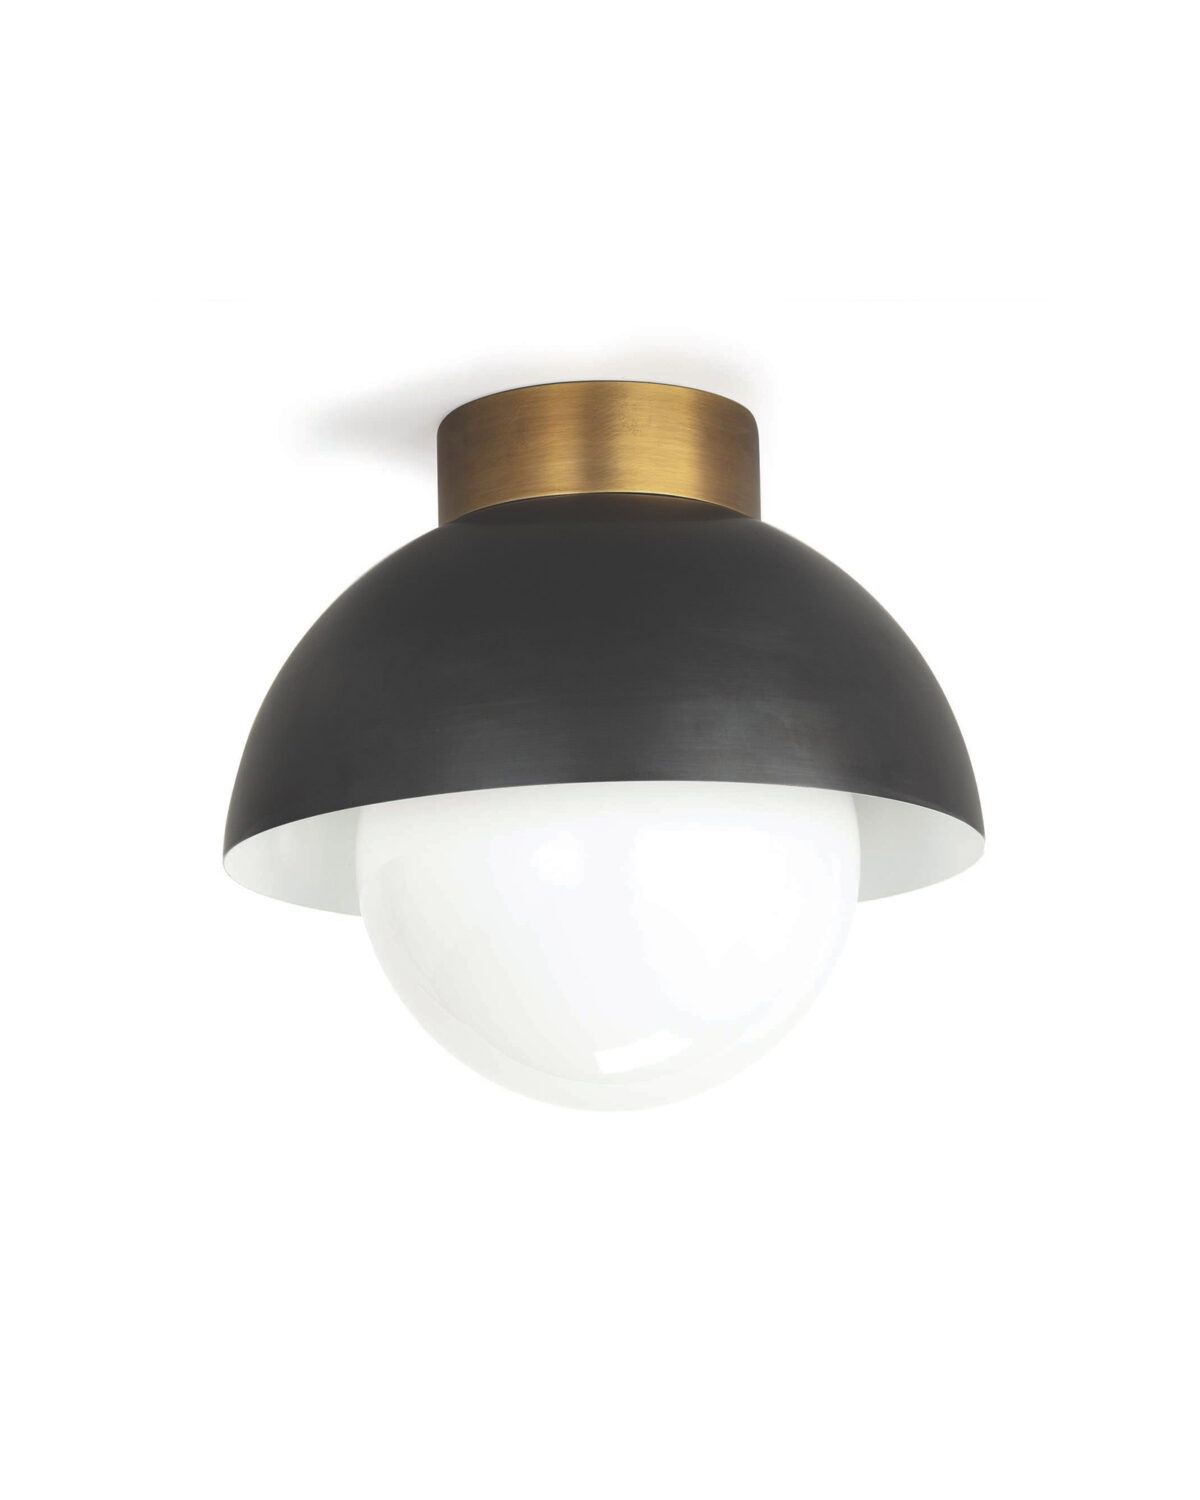 Потолочный светильник в виде чаши купола "Бомон" черный цвет с золотом